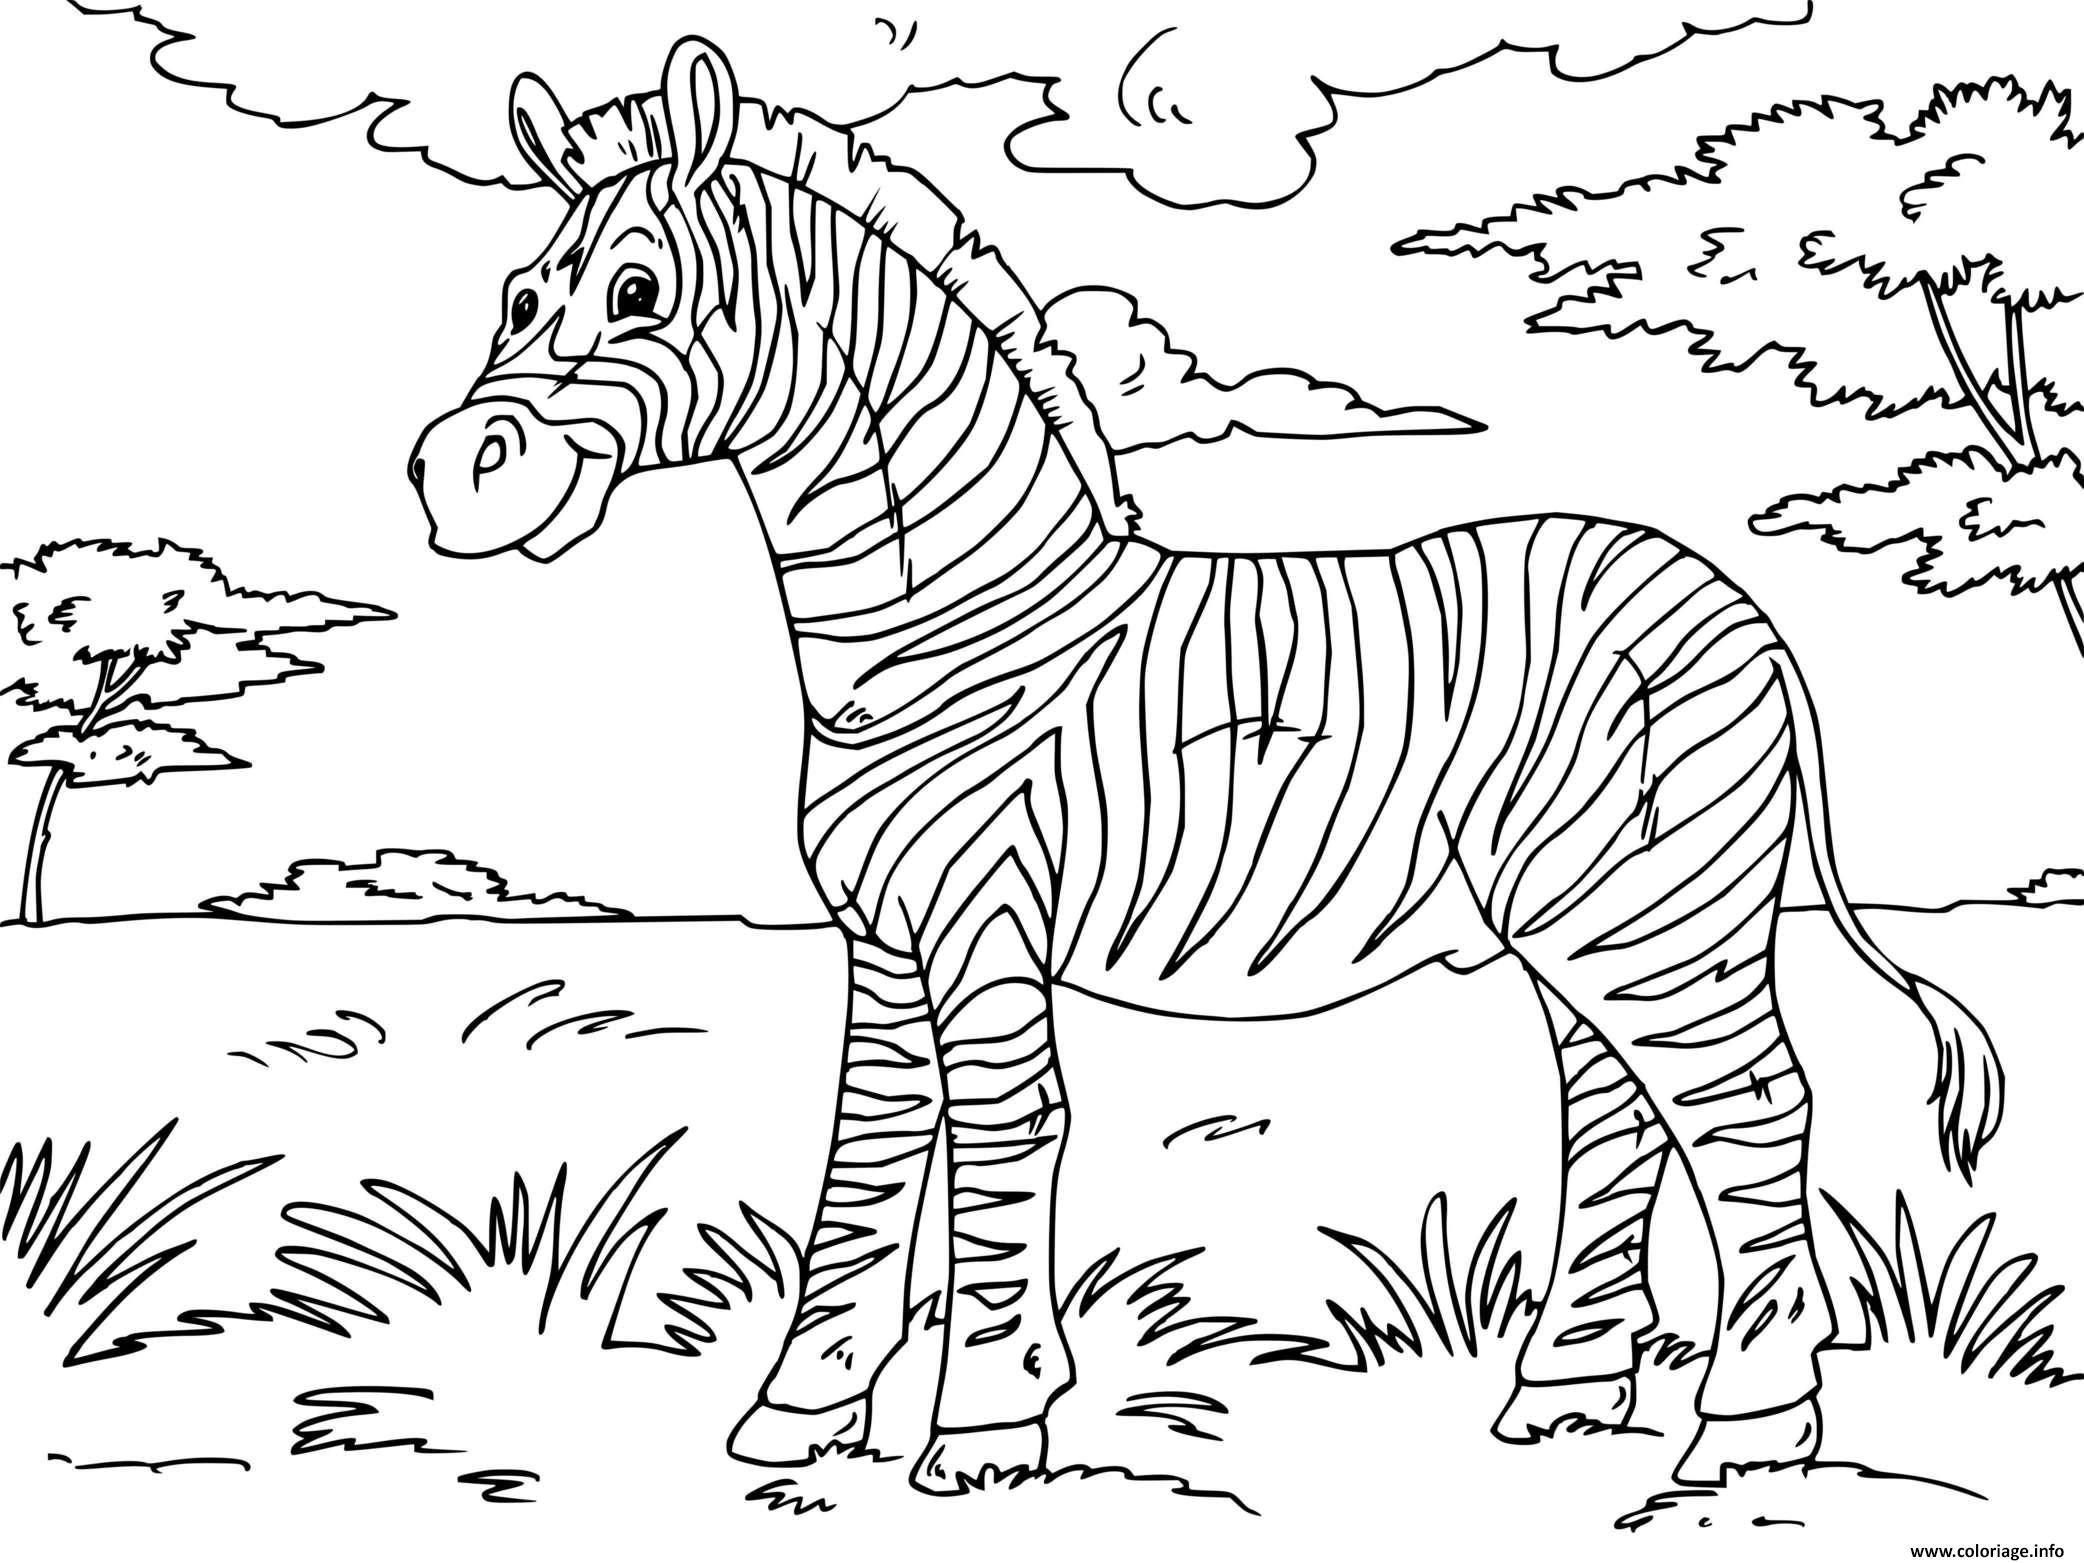 Dessin zebre un mammifere herbivore ressemblant au cheval Coloriage Gratuit à Imprimer